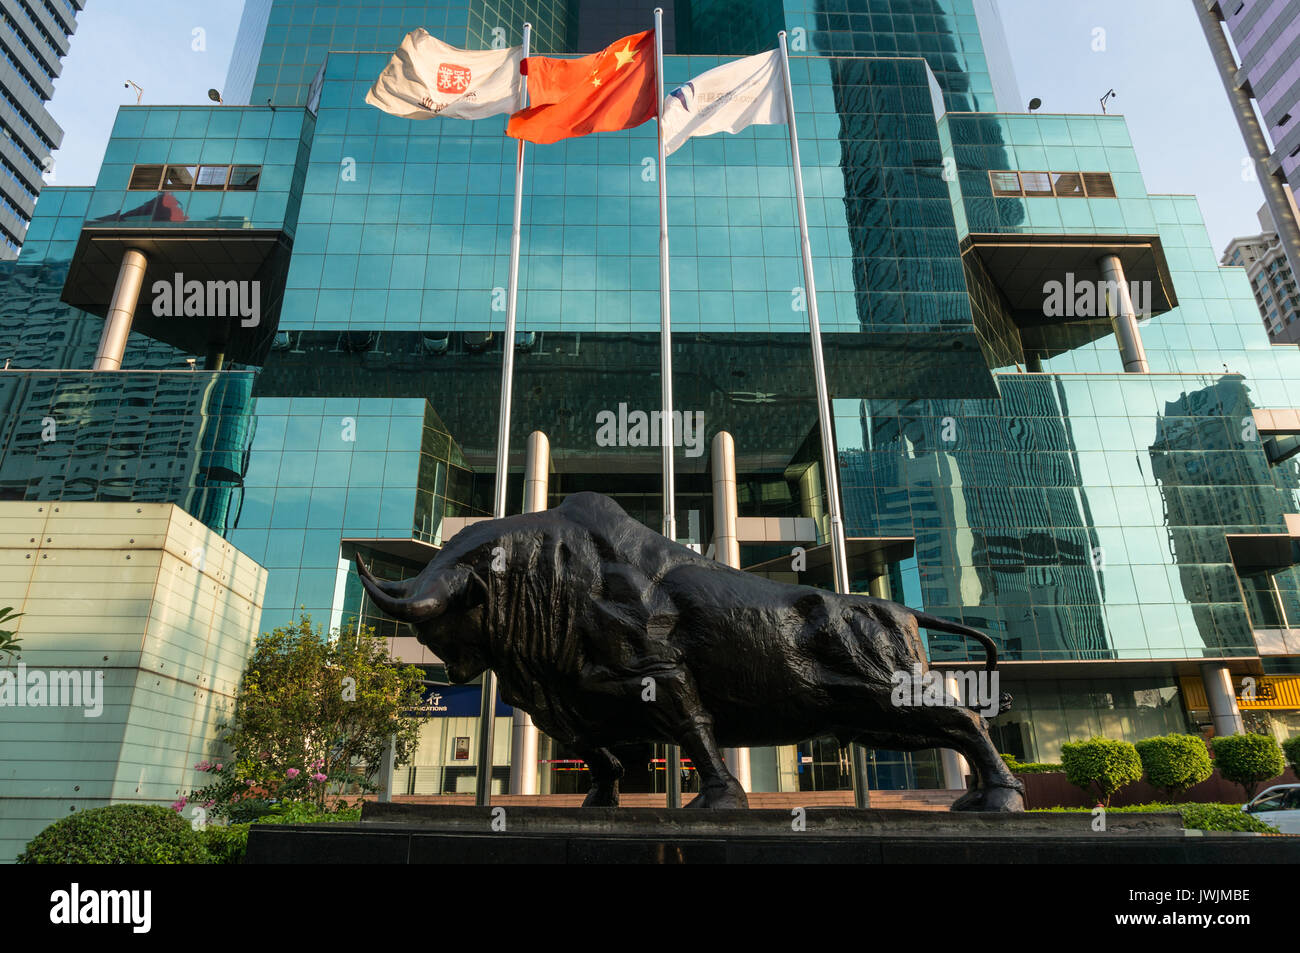 Statue en dehors de bull bourse de Shenzhen, l'un des principaux marchés boursiers en Chine, à Shenzhen, province de Guangdong, Chine Banque D'Images